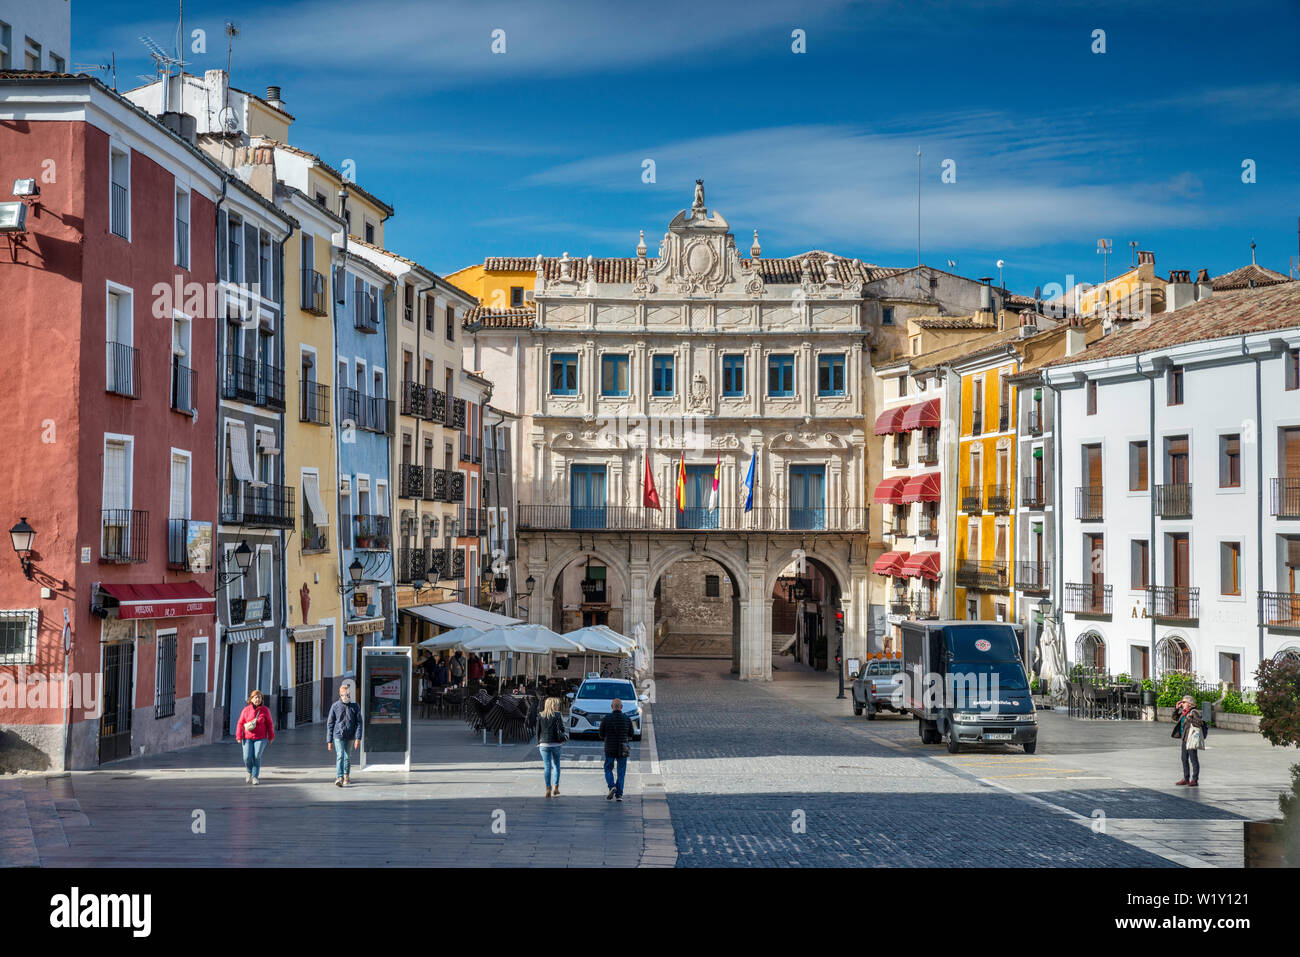 Ayuntamiento de Cuenca (Town Hall) at Plaza Mayor in Cuenca, Castile-La Mancha,  Spain Stock Photo